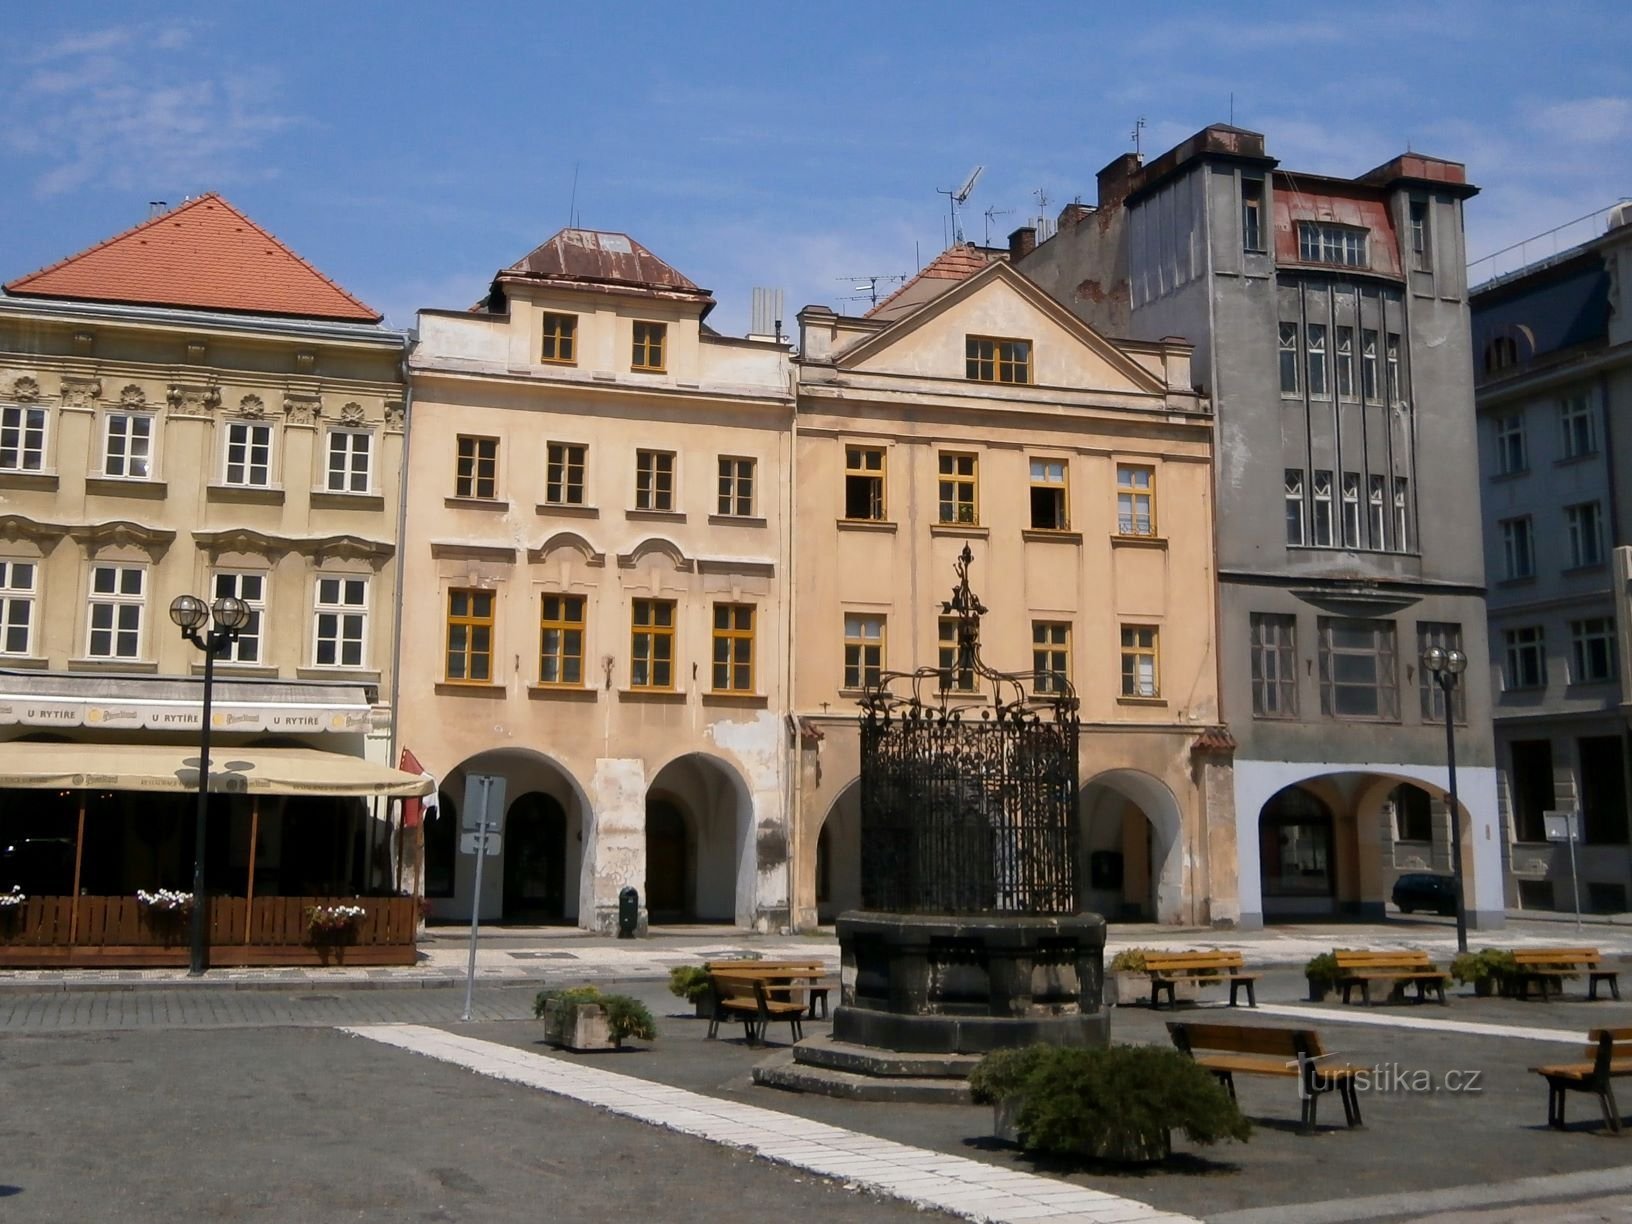 Velké náměstí nr. 143-142 (Hradec Králové, 23.7.2016/XNUMX/XNUMX)